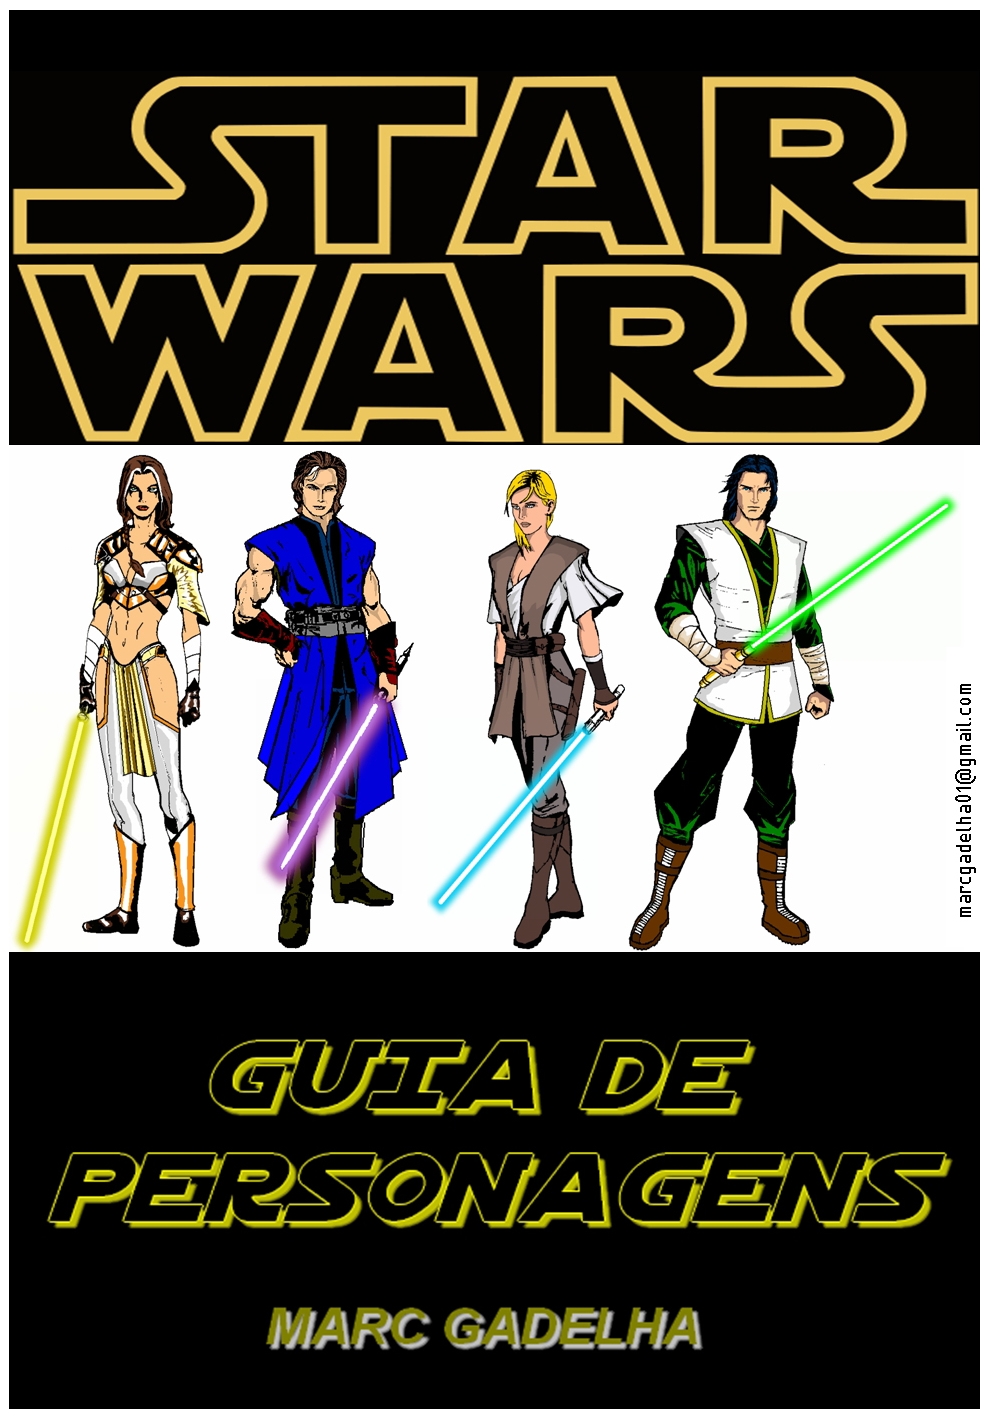 Star Wars - Personagens